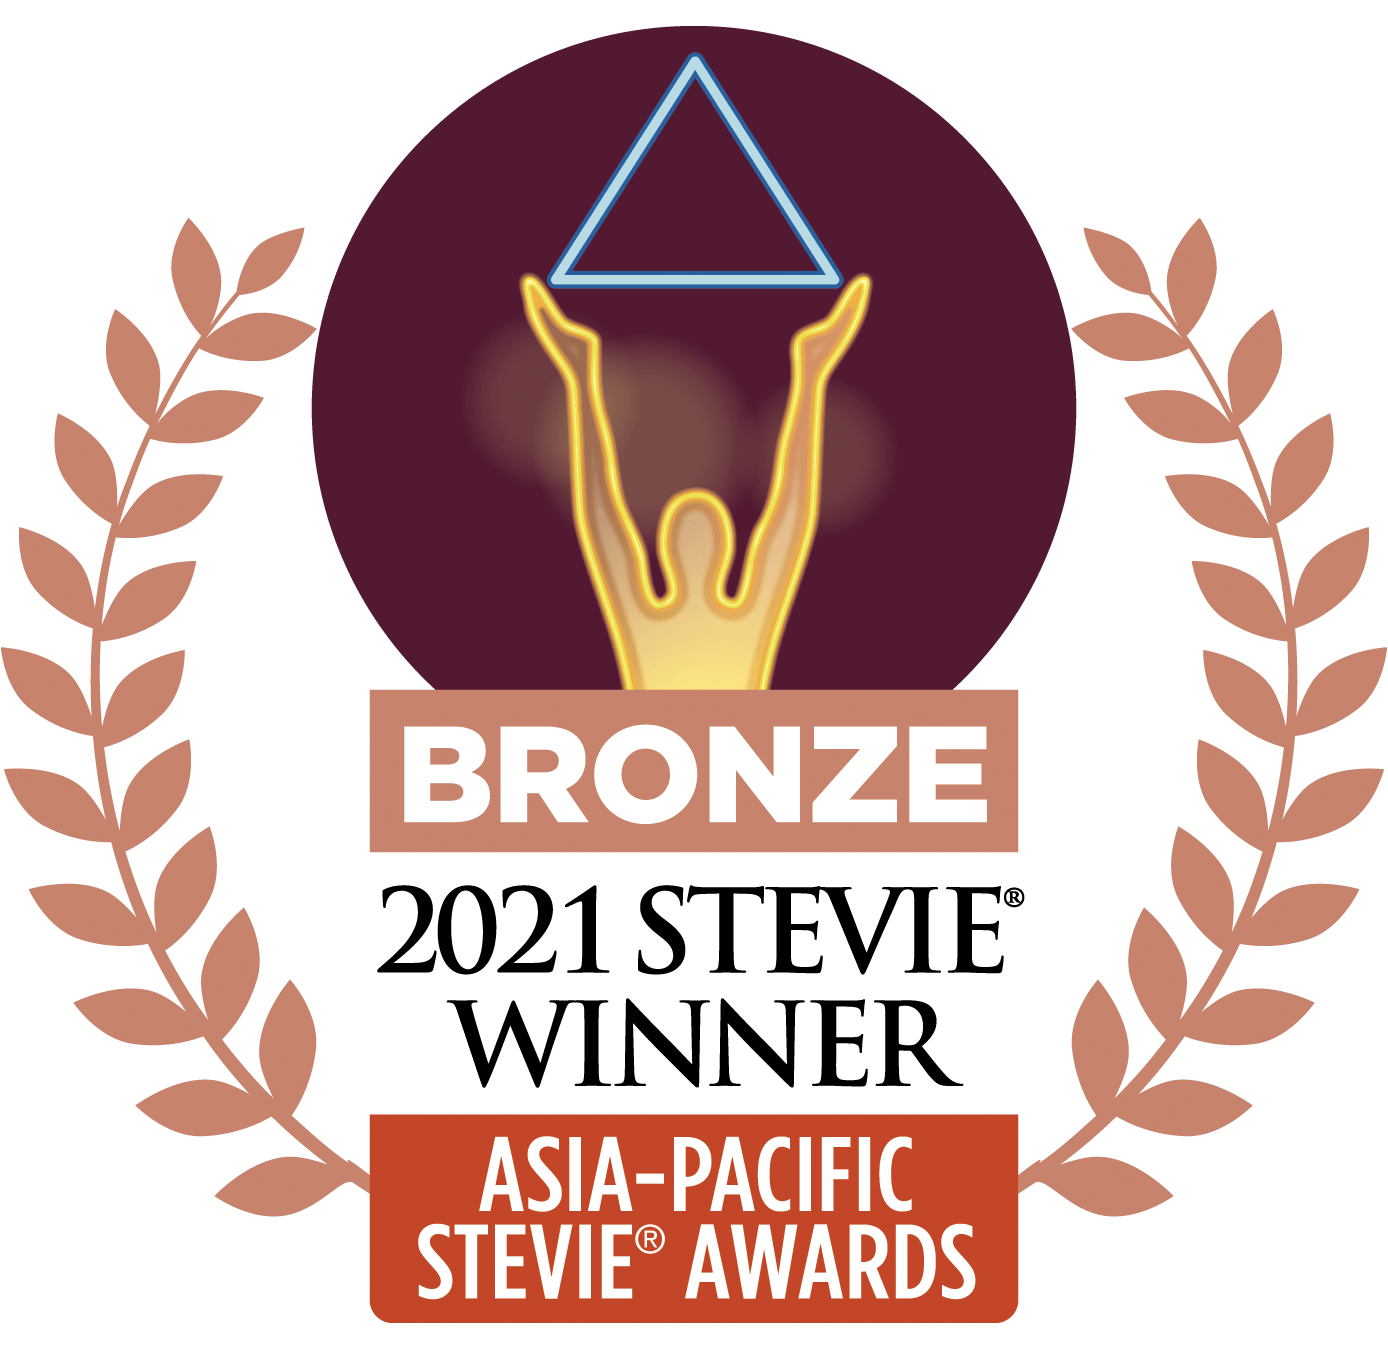 Asia-Pacific Stevie Award logo for bronze winner